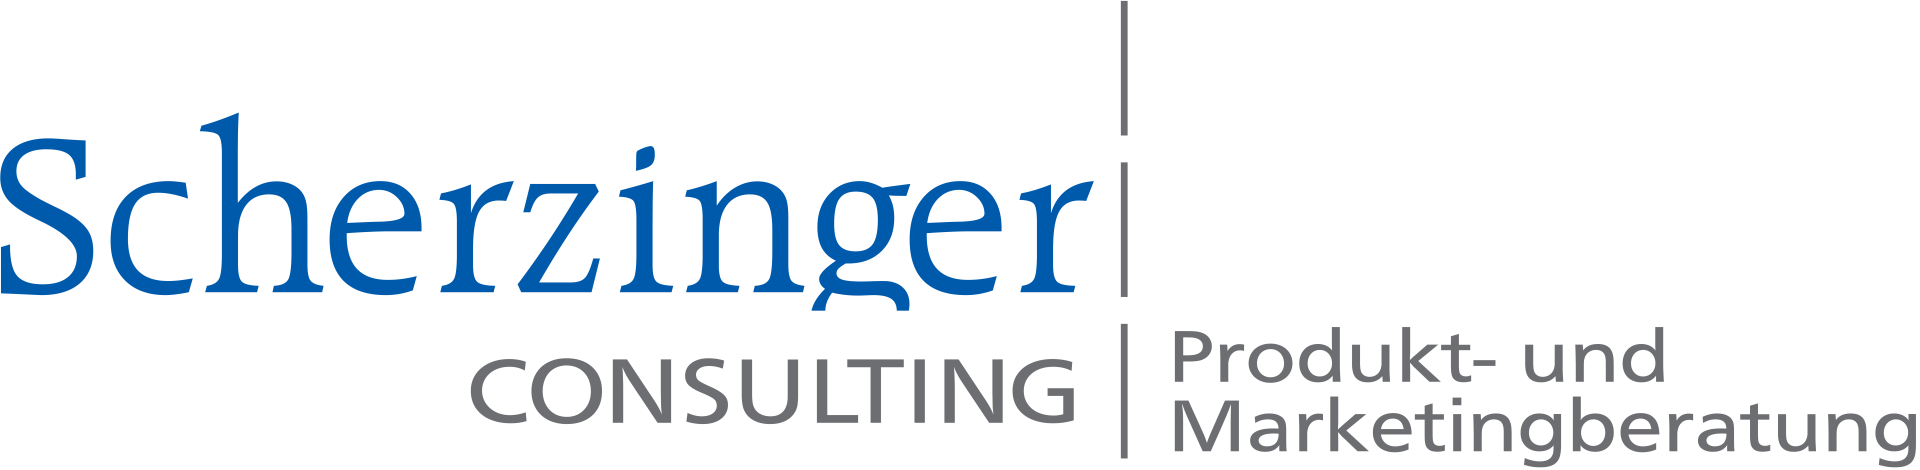 Scherzinger Consulting - Produkt- und Marketingberatung